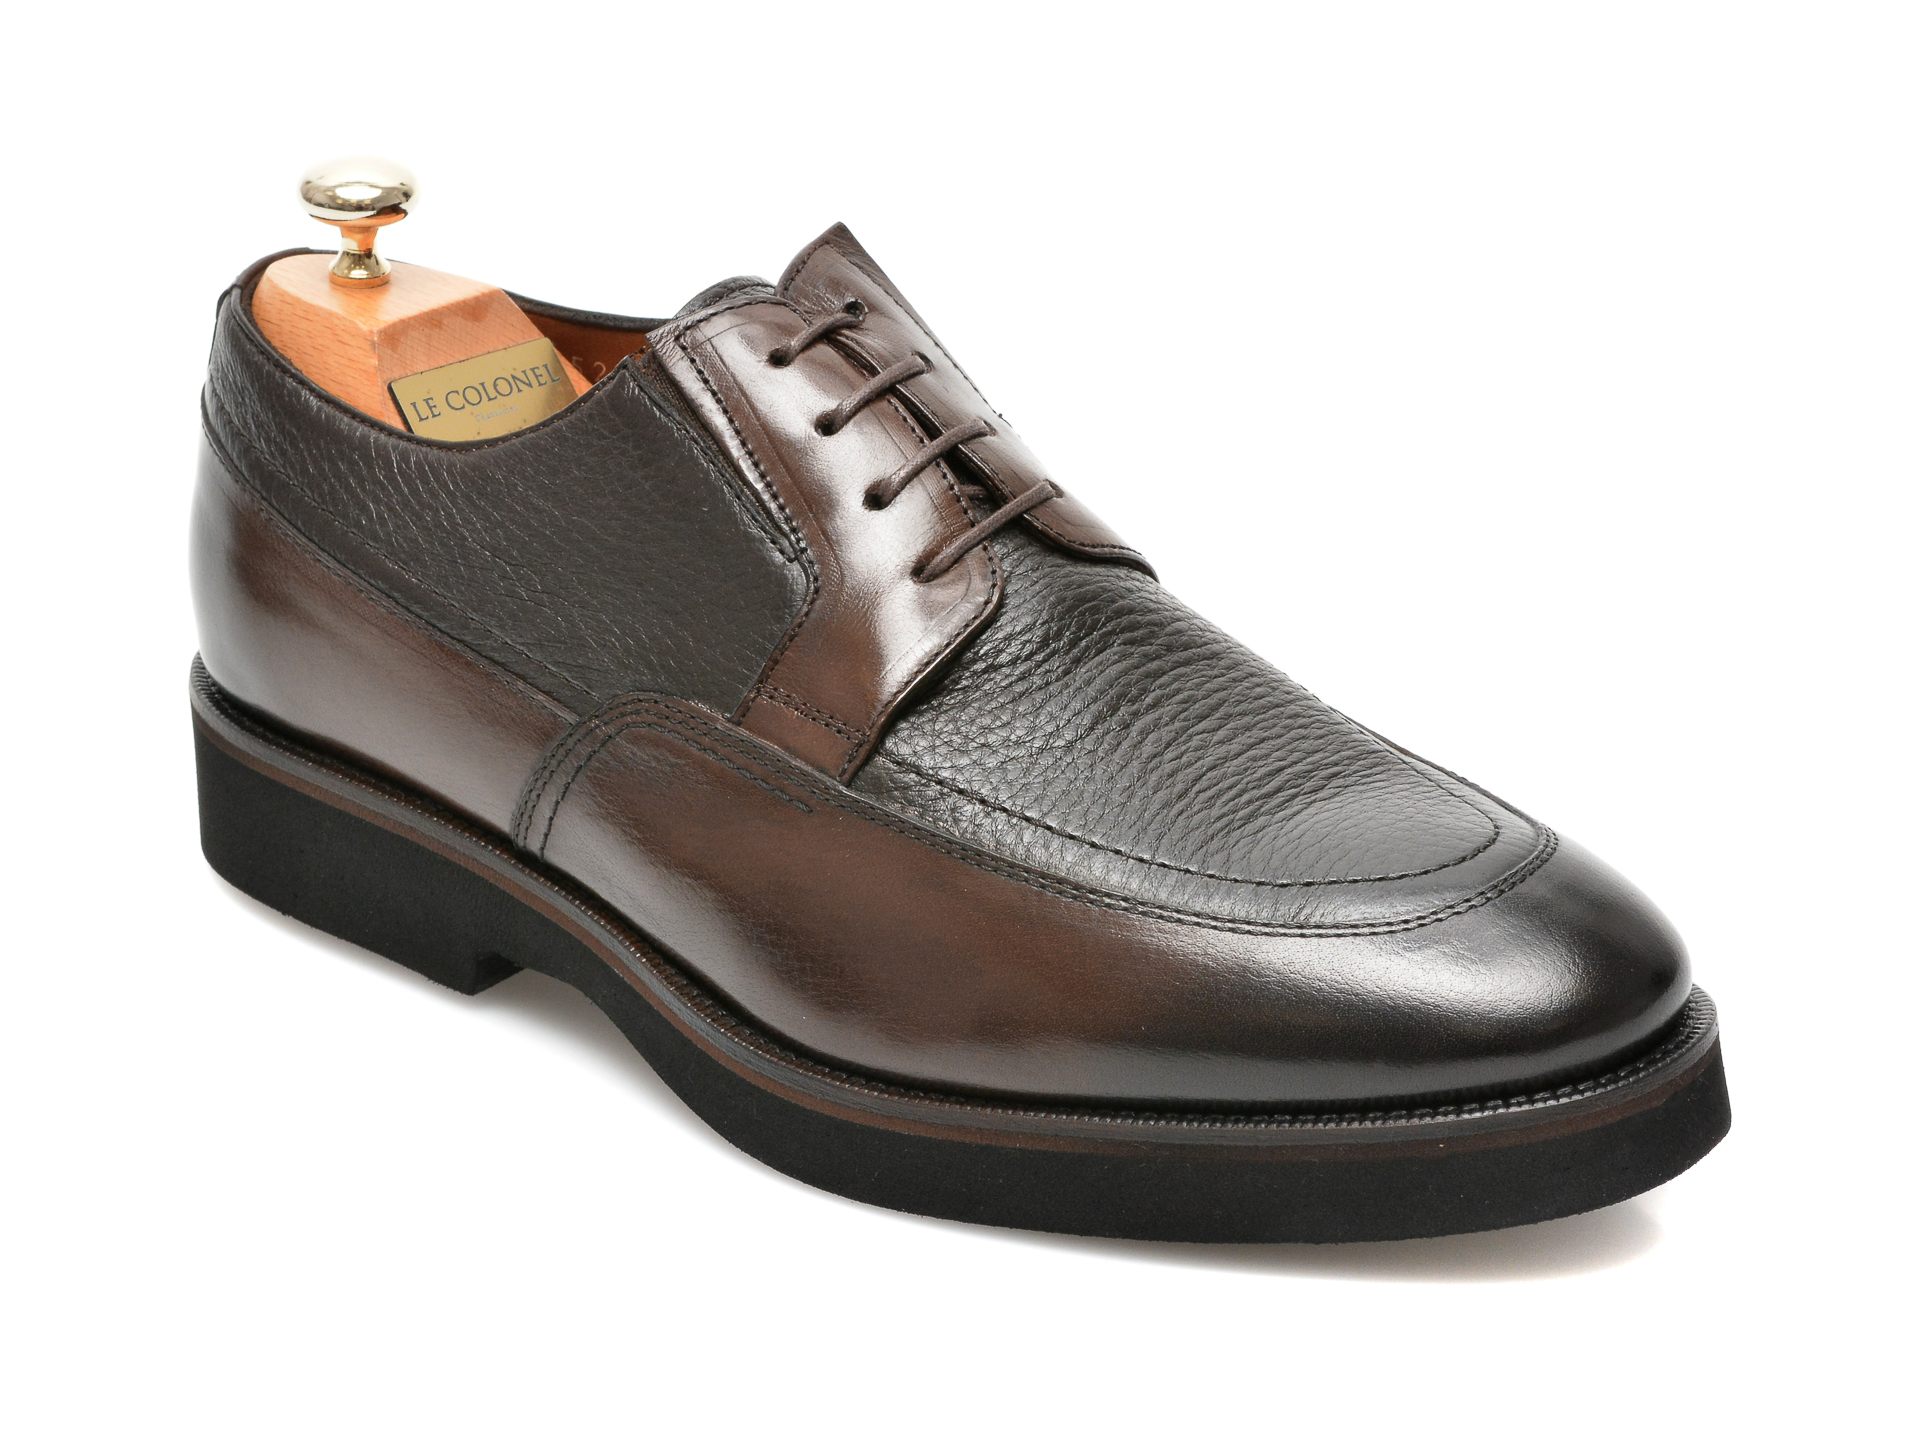 Pantofi LE COLONEL maro, 43452, din piele naturala Le Colonel